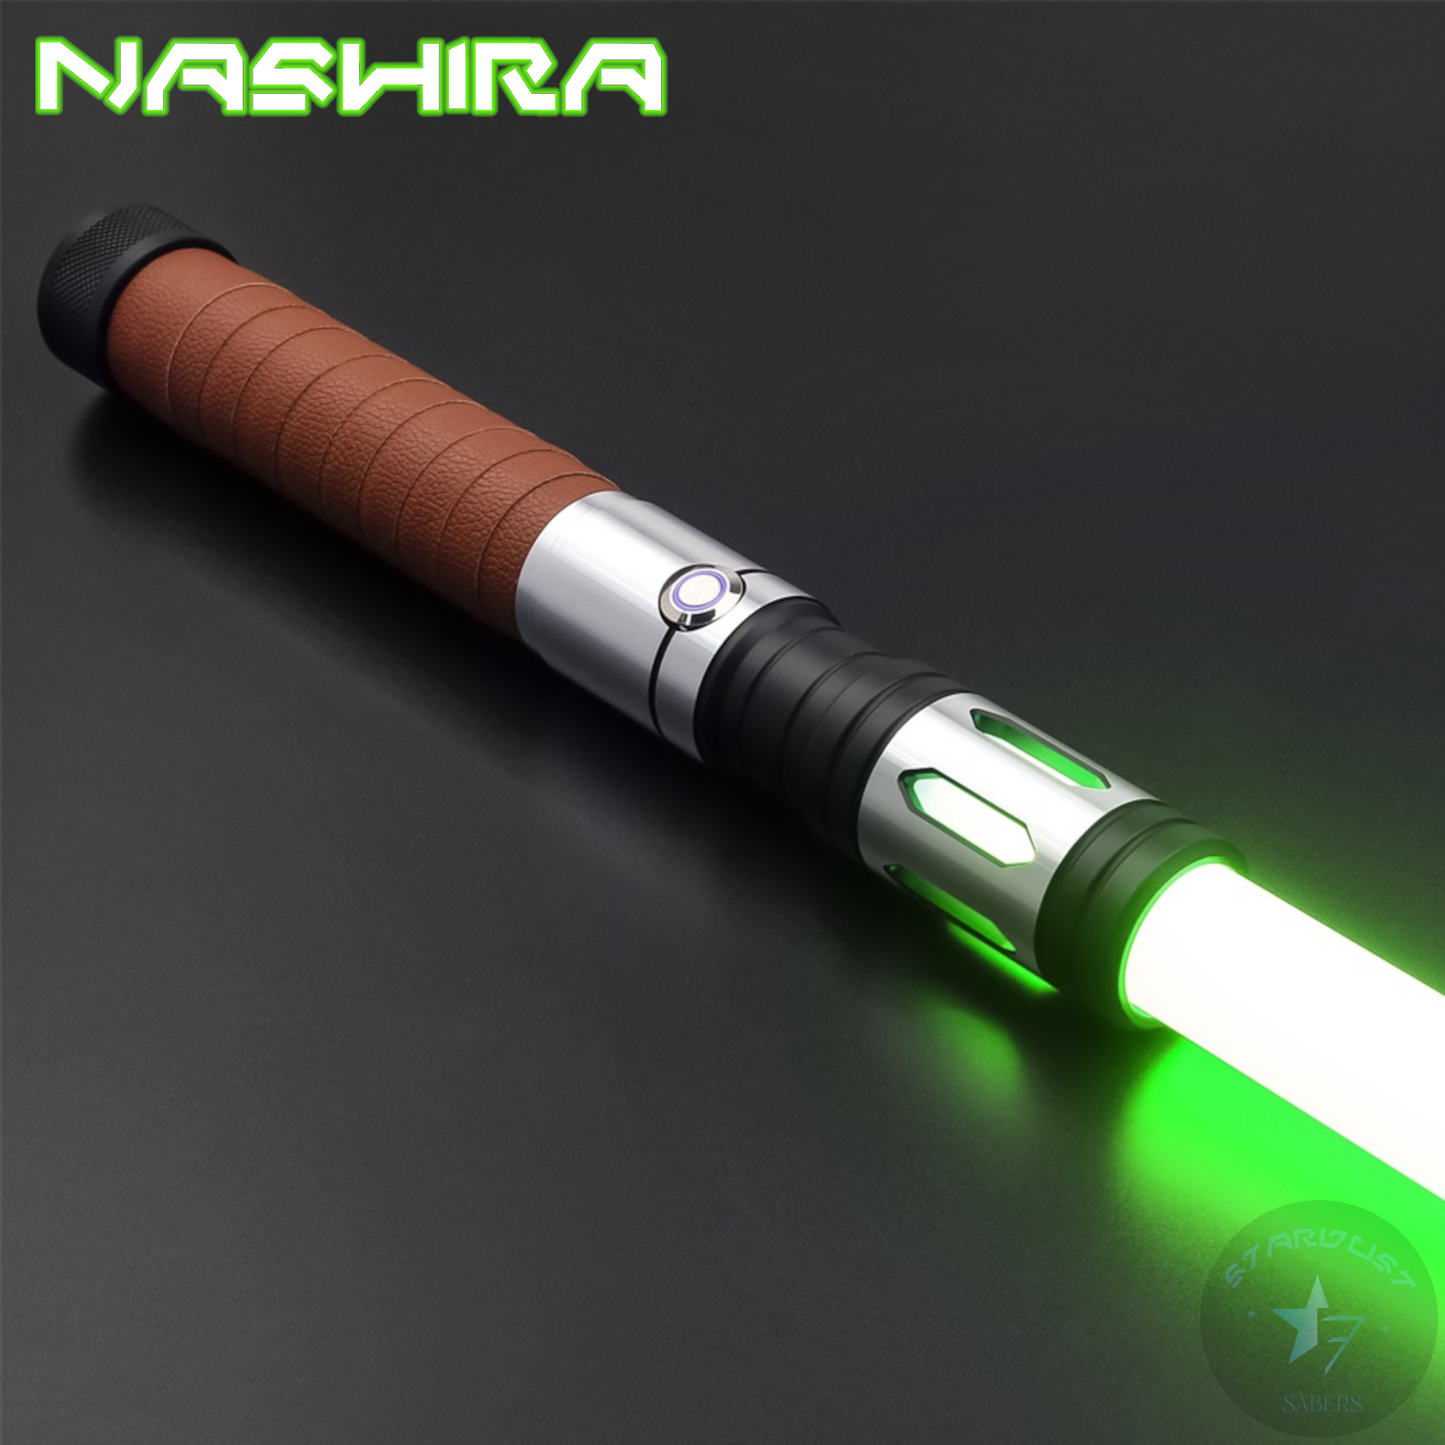 Nashira (S-RGB)